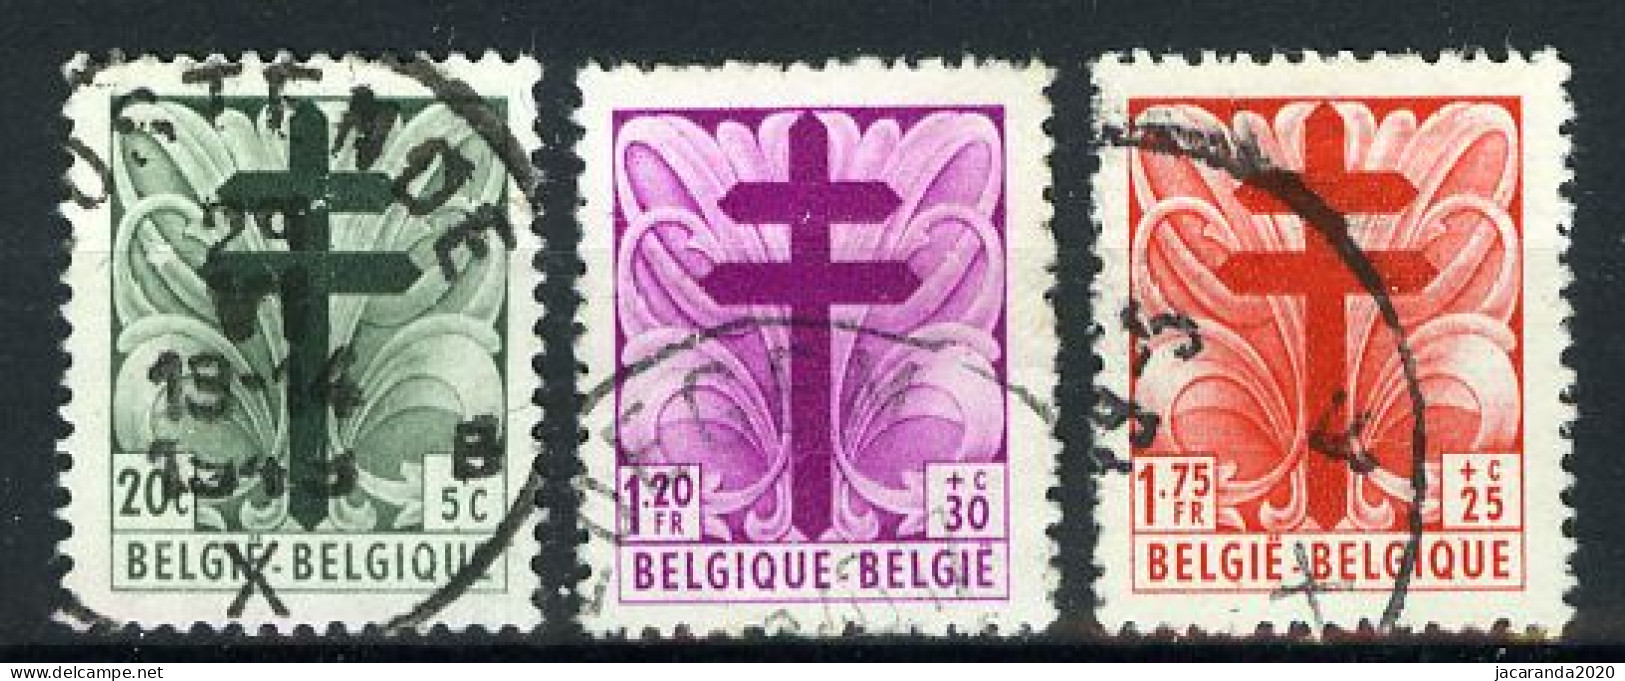 België 787/89 - Antitering - Kruis Van Lotharingen - Portretten Van De Senaat III - Gestempeld - Oblitéré - Used - Gebruikt